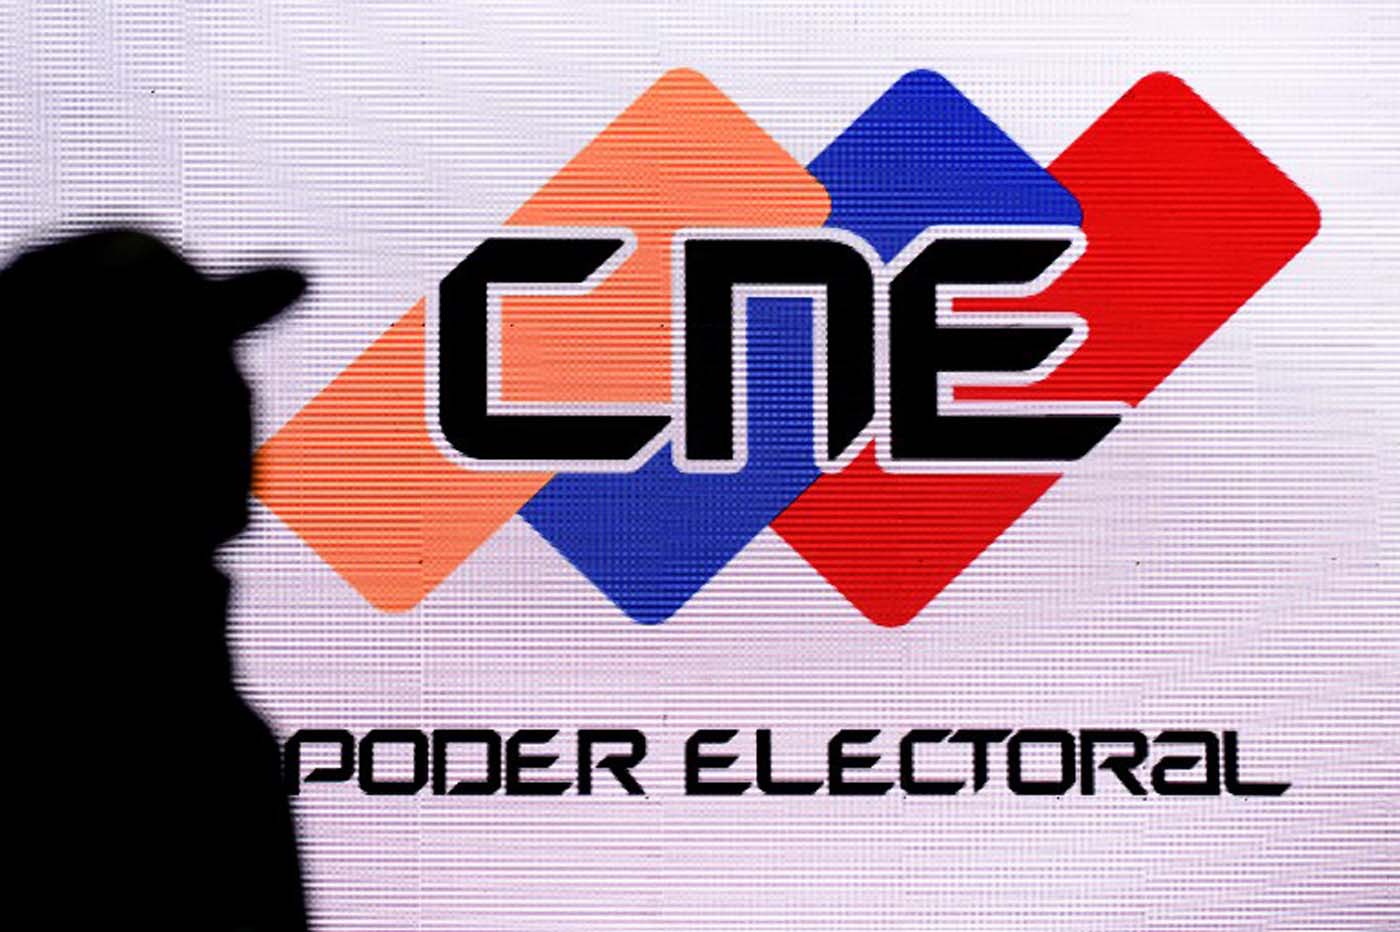 Odca condenó que el régimen de Maduro adelante una nueva estafa electoral (Comunicado)